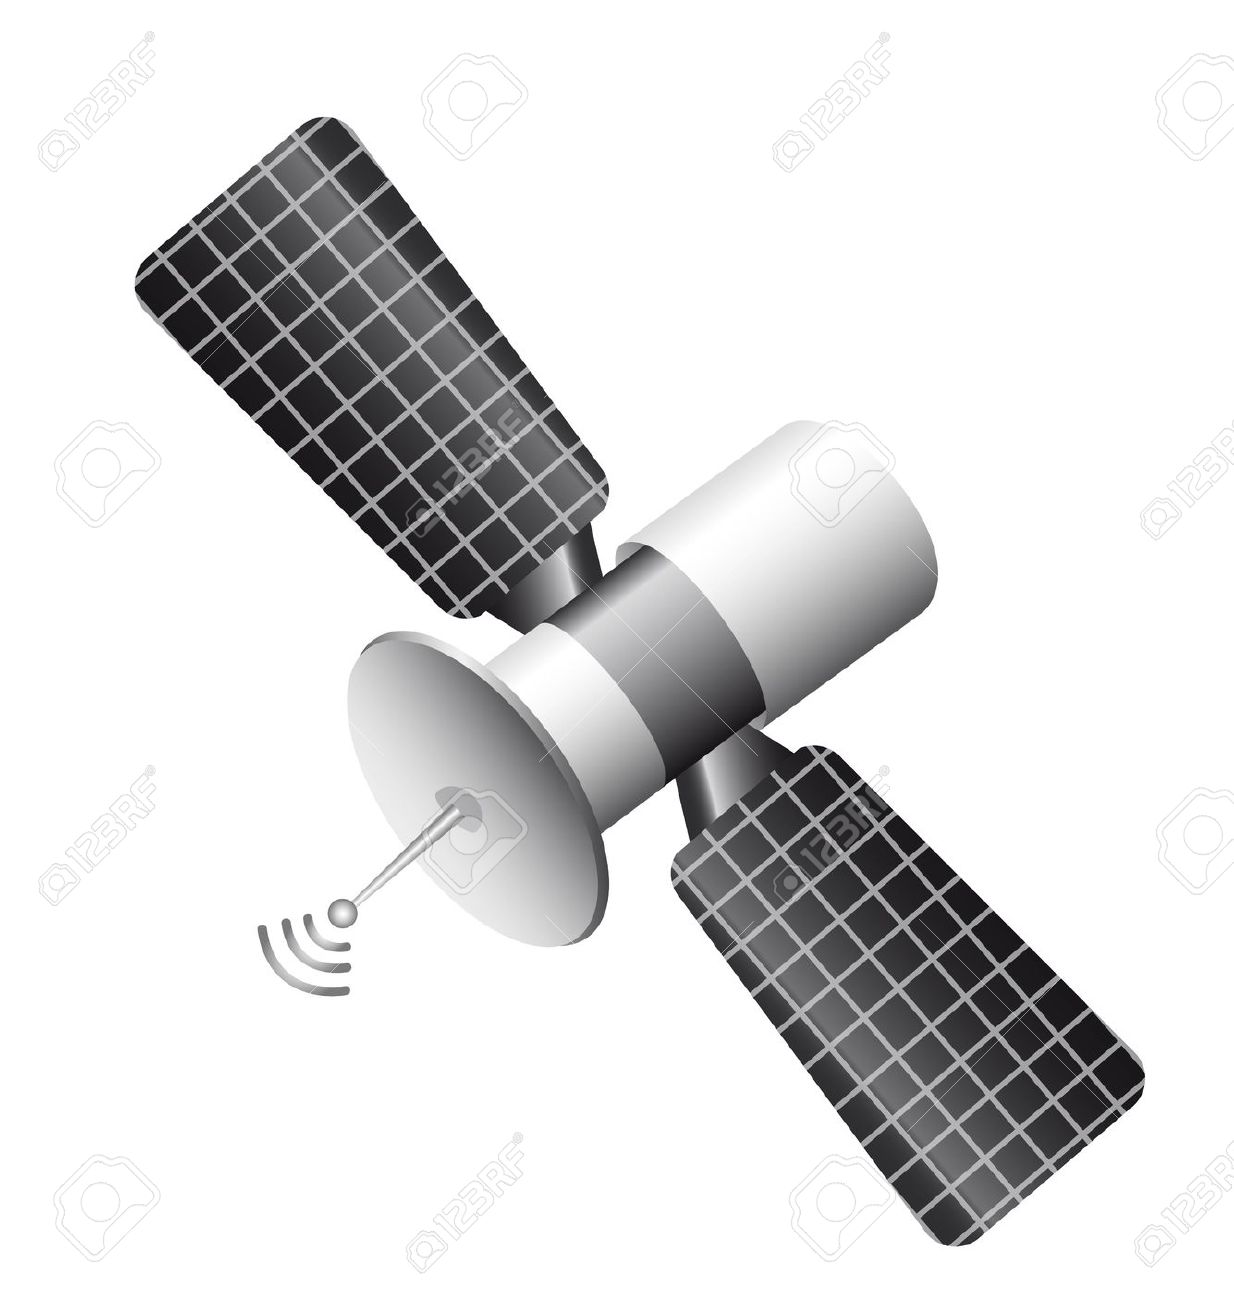 Satelite clipart #9, Download drawings